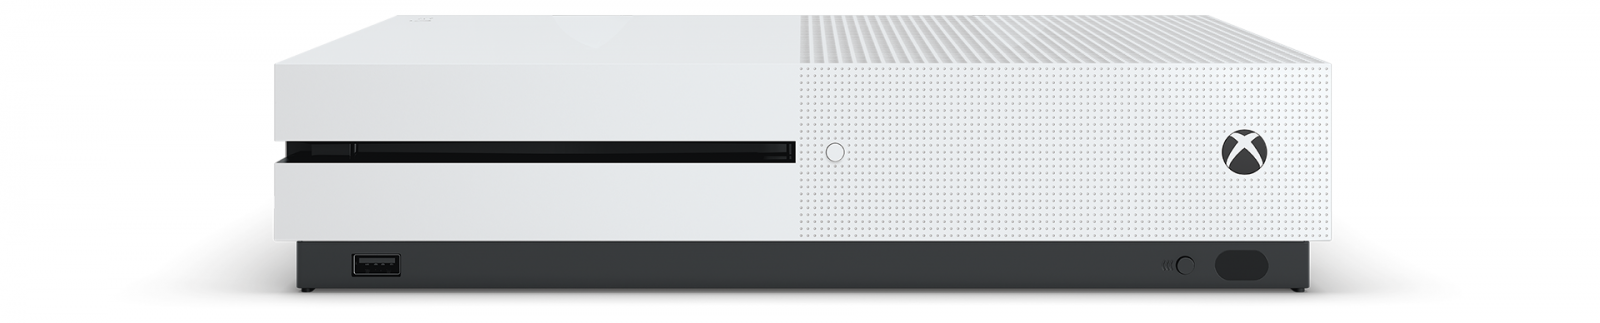 Xbox One S 1TB с двумя джойстиками image1